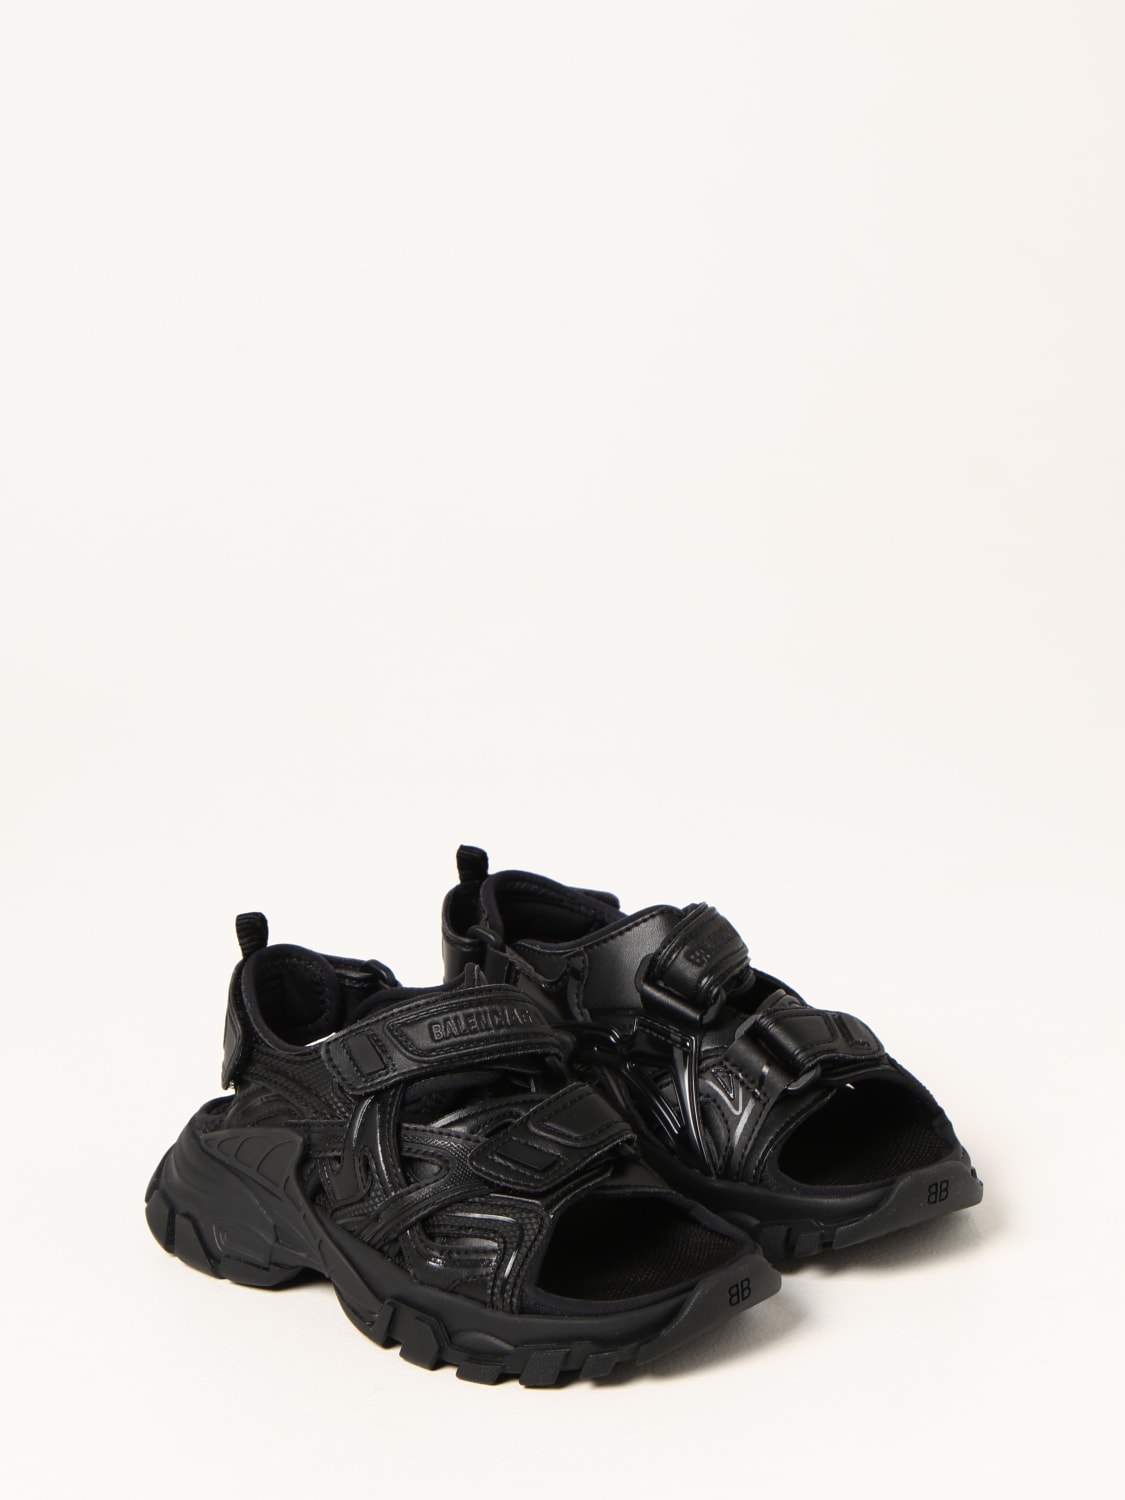 Balenciaga Outlet: Track sandals - Black | Balenciaga shoes 